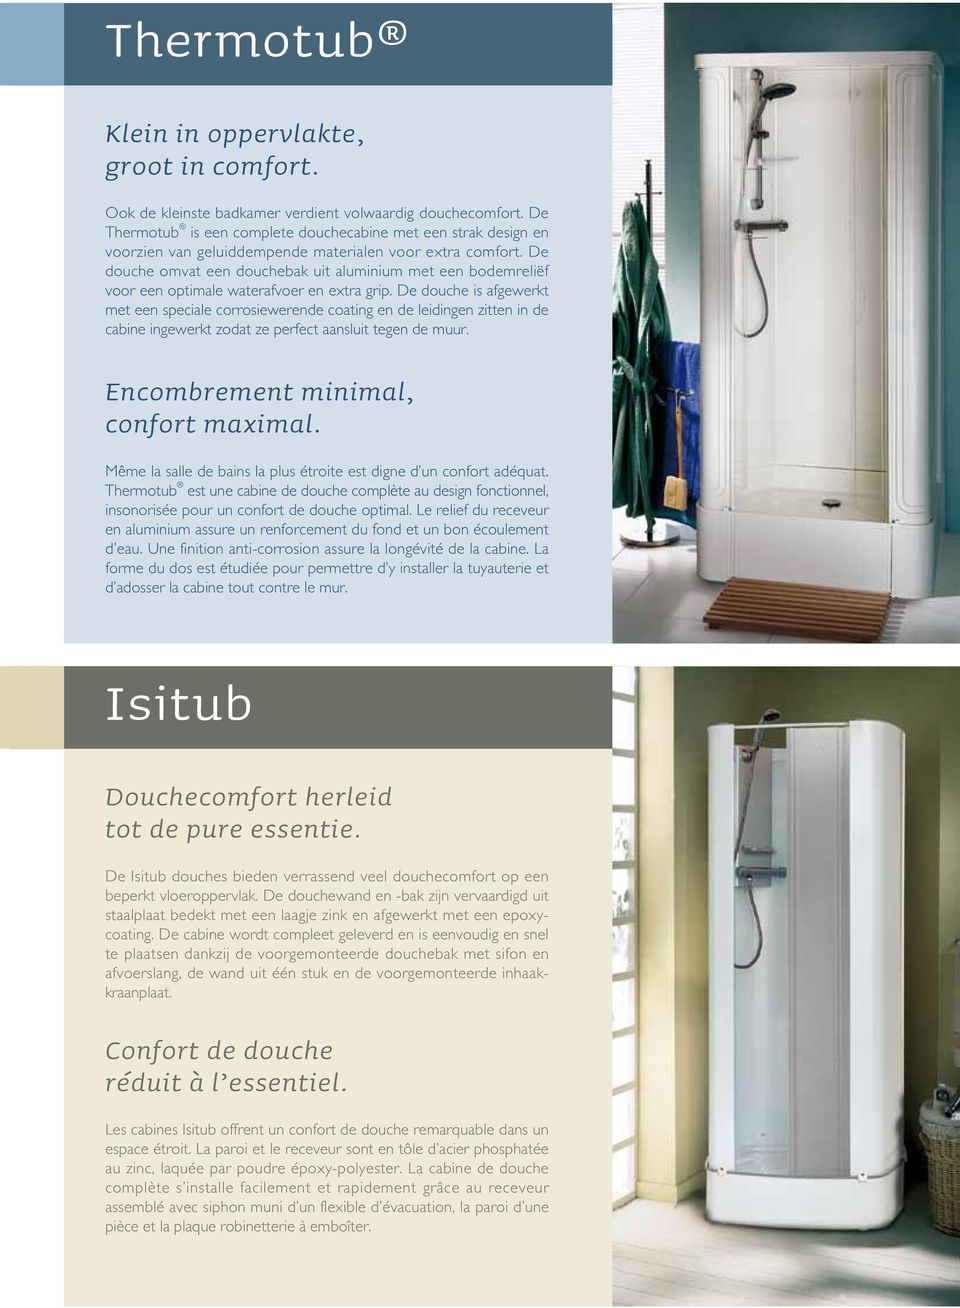 De douche omvat een douchebak uit aluminium met een bodemreliëf voor een optimale waterafvoer en extra grip.